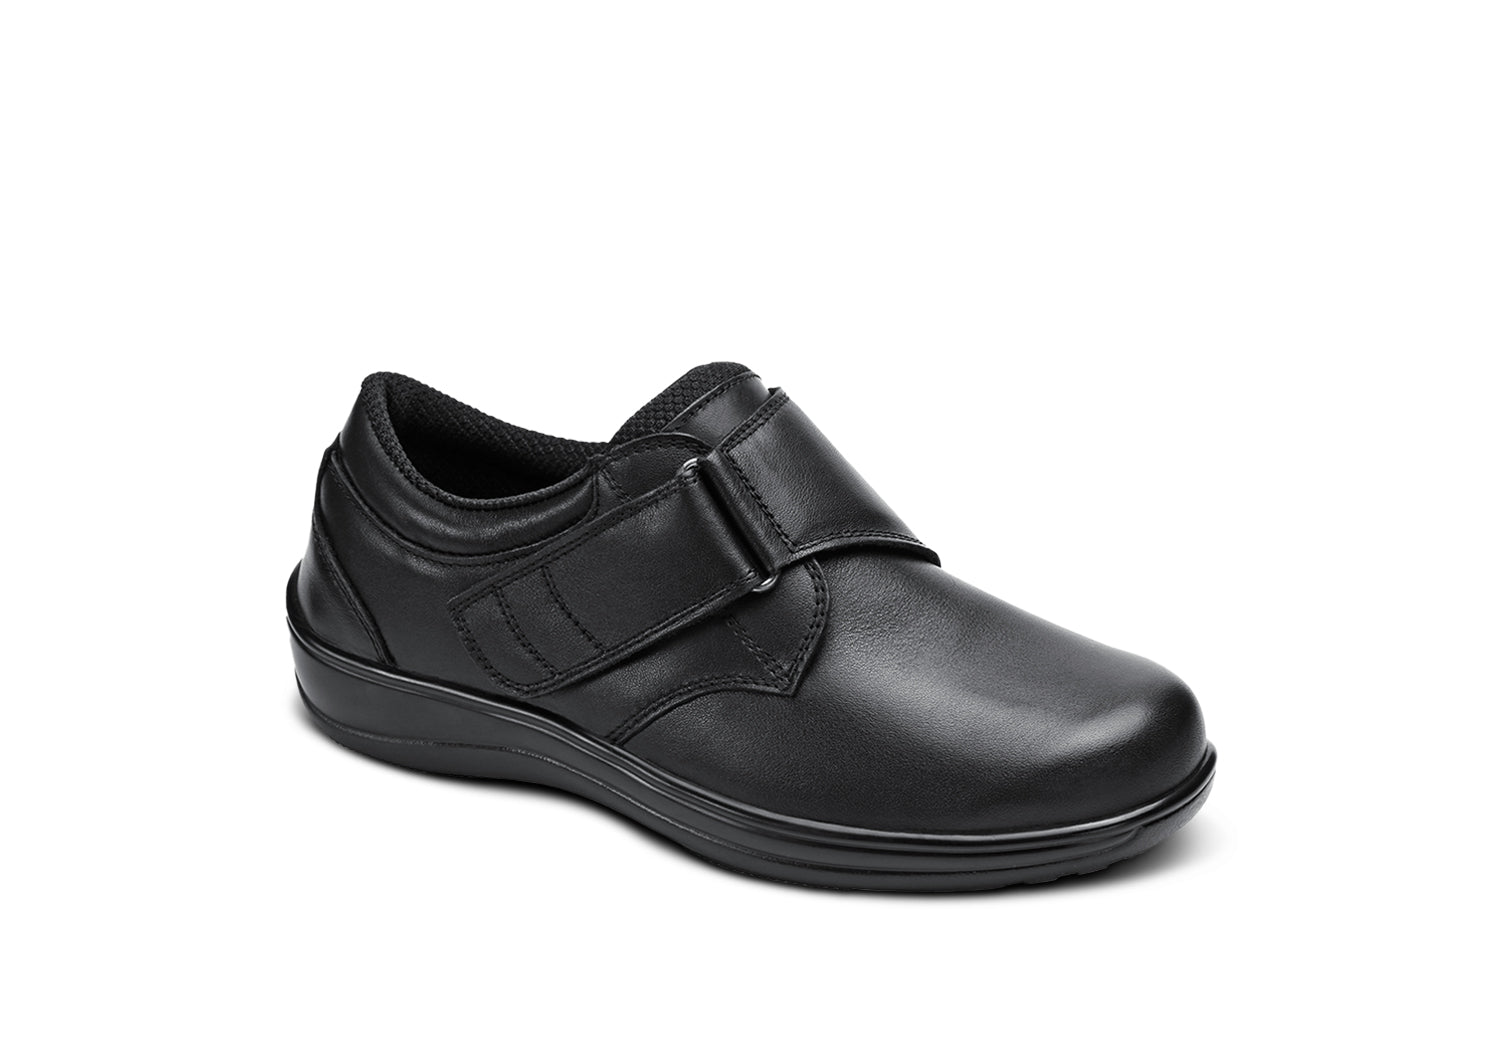 Arcadia Black Women's Orthotic Shoes | OrthoFeet